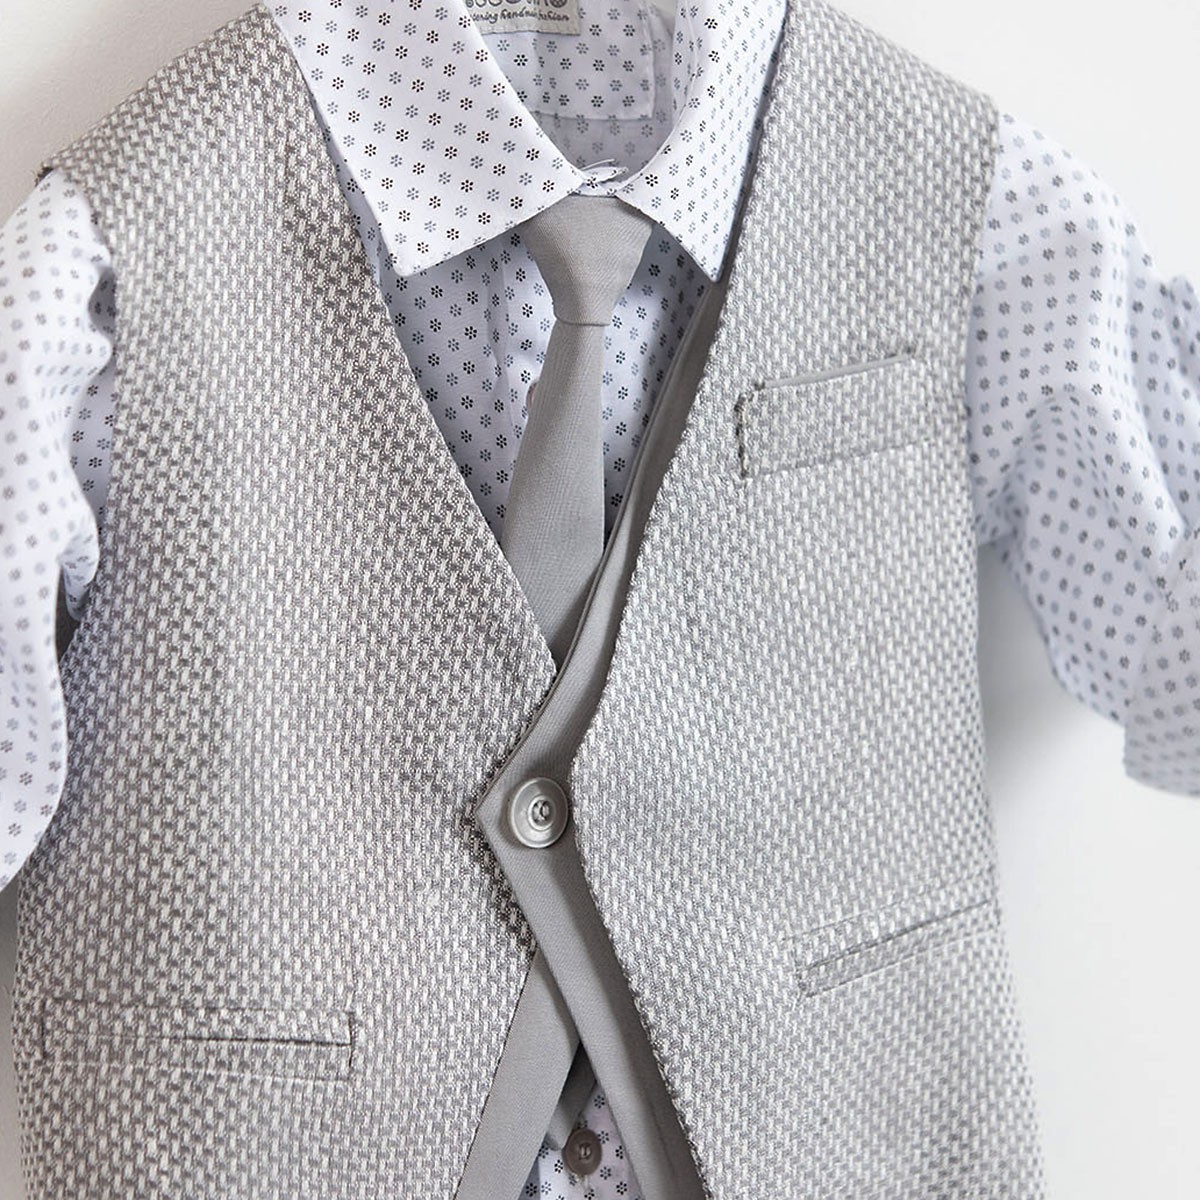 Βαπτιστικό κοστούμι Piccolino Silvio-22 σε χρώμα Grey